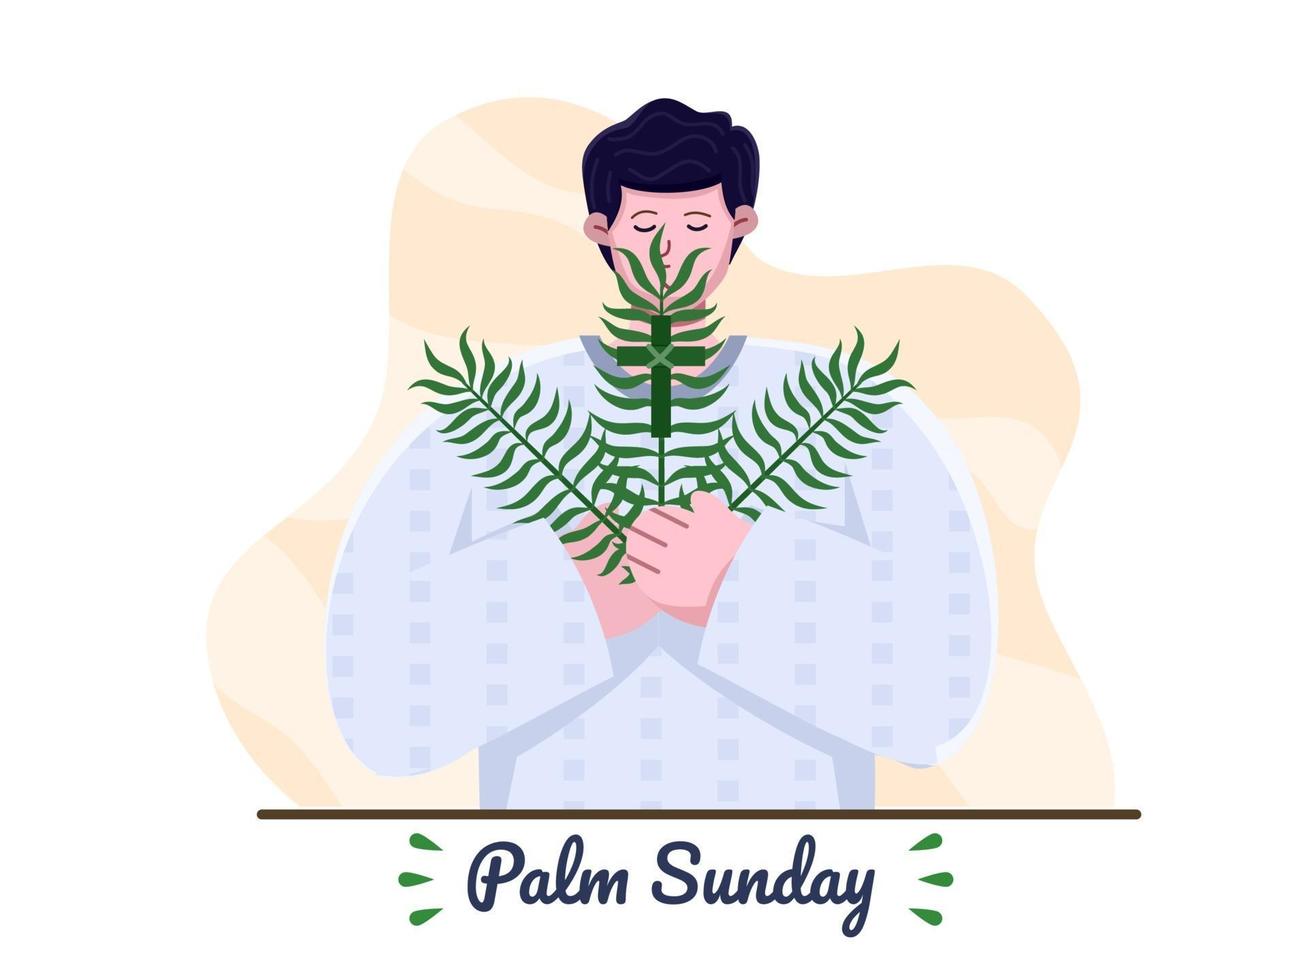 gelukkige palmzondag met christelijke predikanten die kruis en palmbladeren brengen. palmzondag christelijke feestdag. geschikt voor wenskaart, uitnodiging, banner, flyer, poster. vector